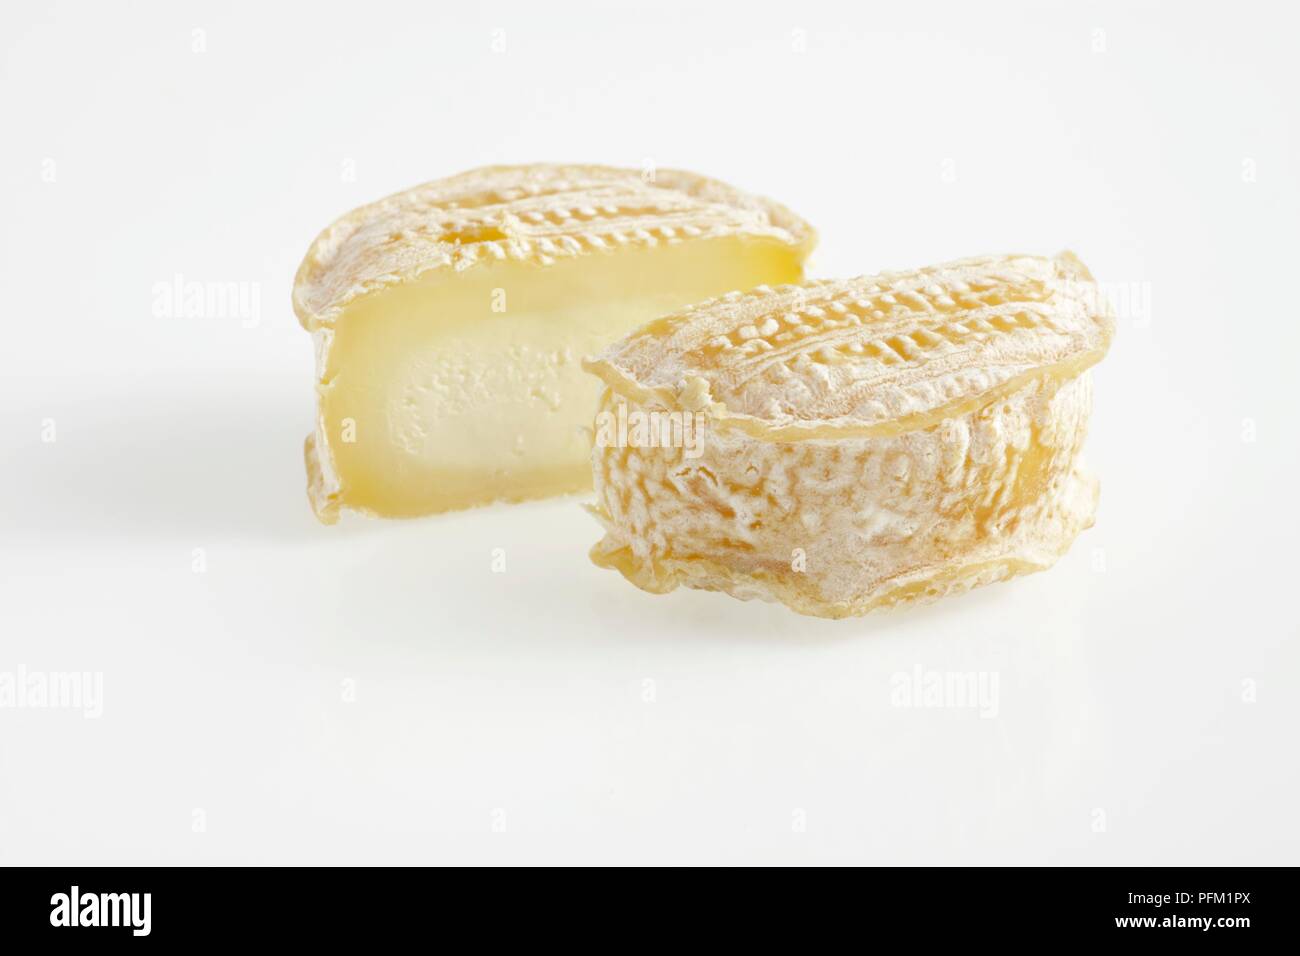 Meubles de série de Lou Français Rocaillou fromage de brebis moulé blanc montrant la couenne Banque D'Images